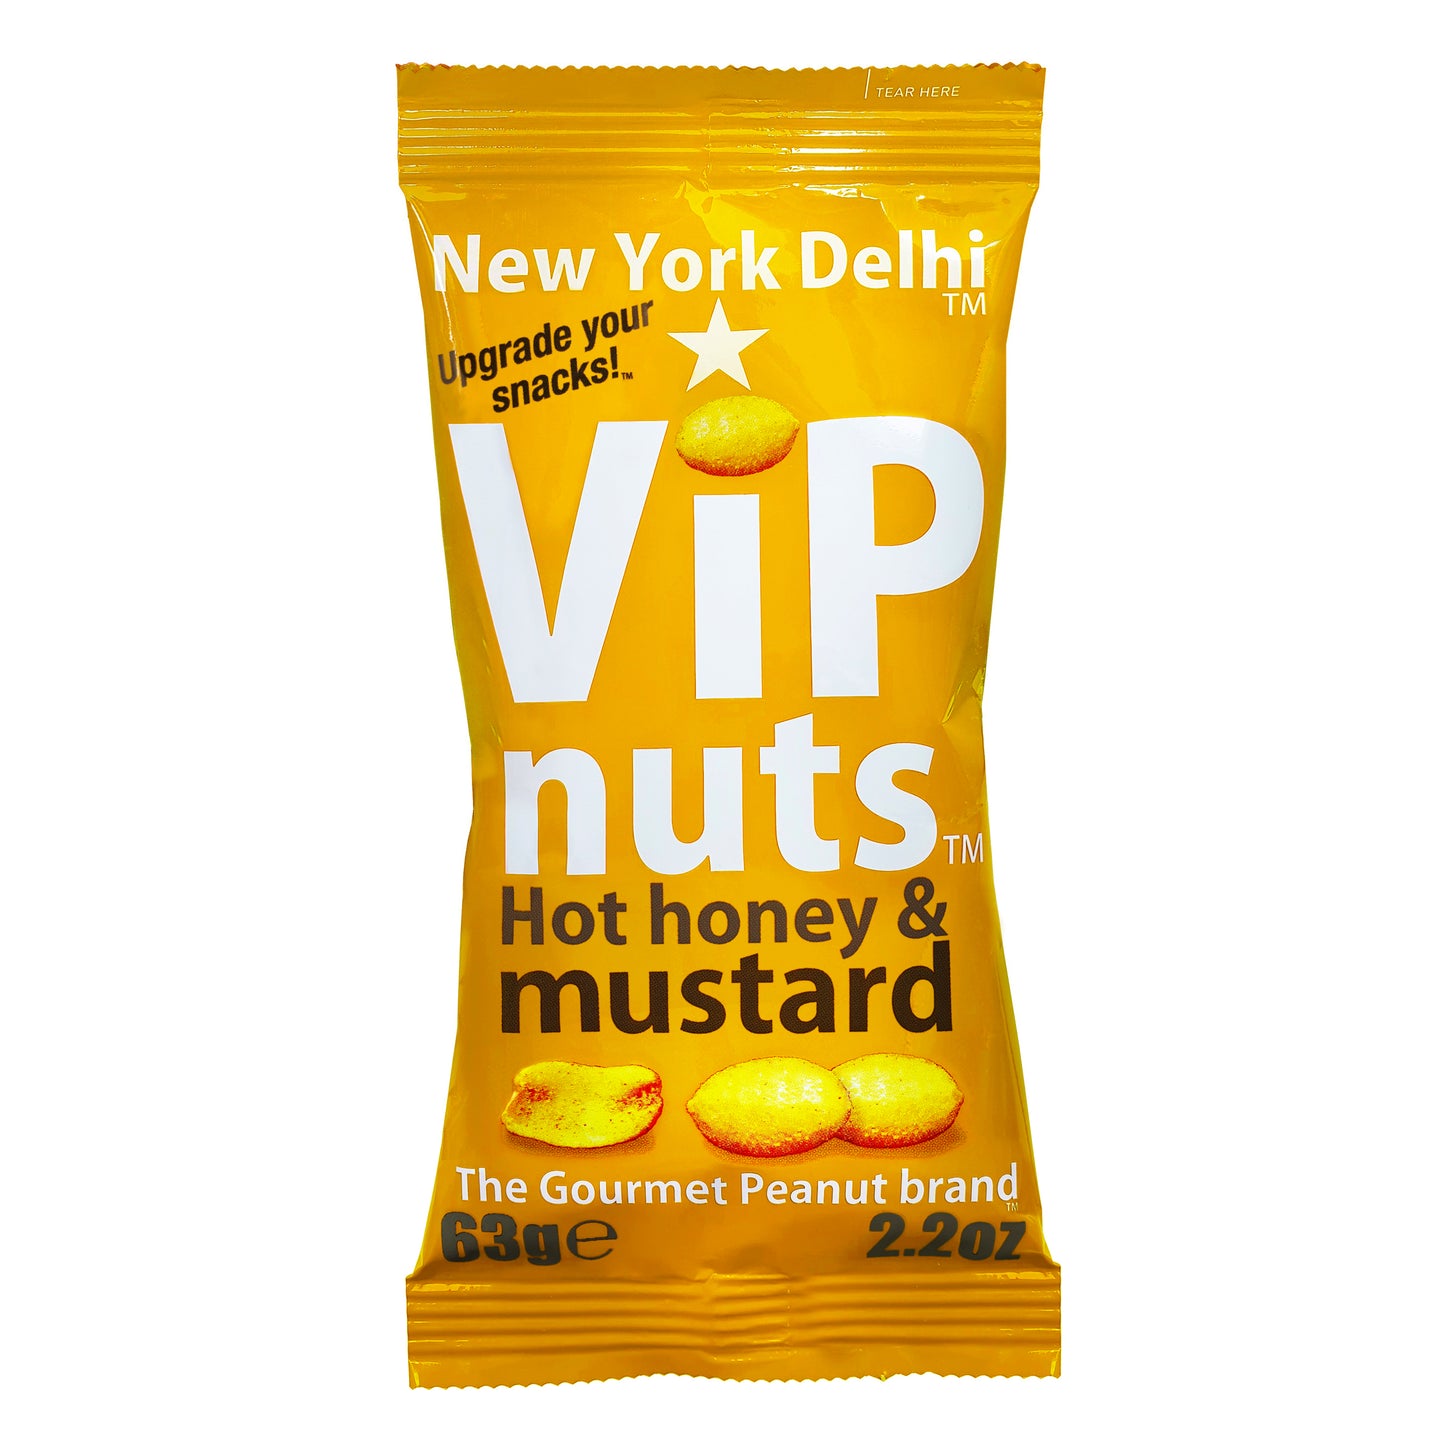 ViPnuts Hot Honey & Mustard peanuts 63g pack